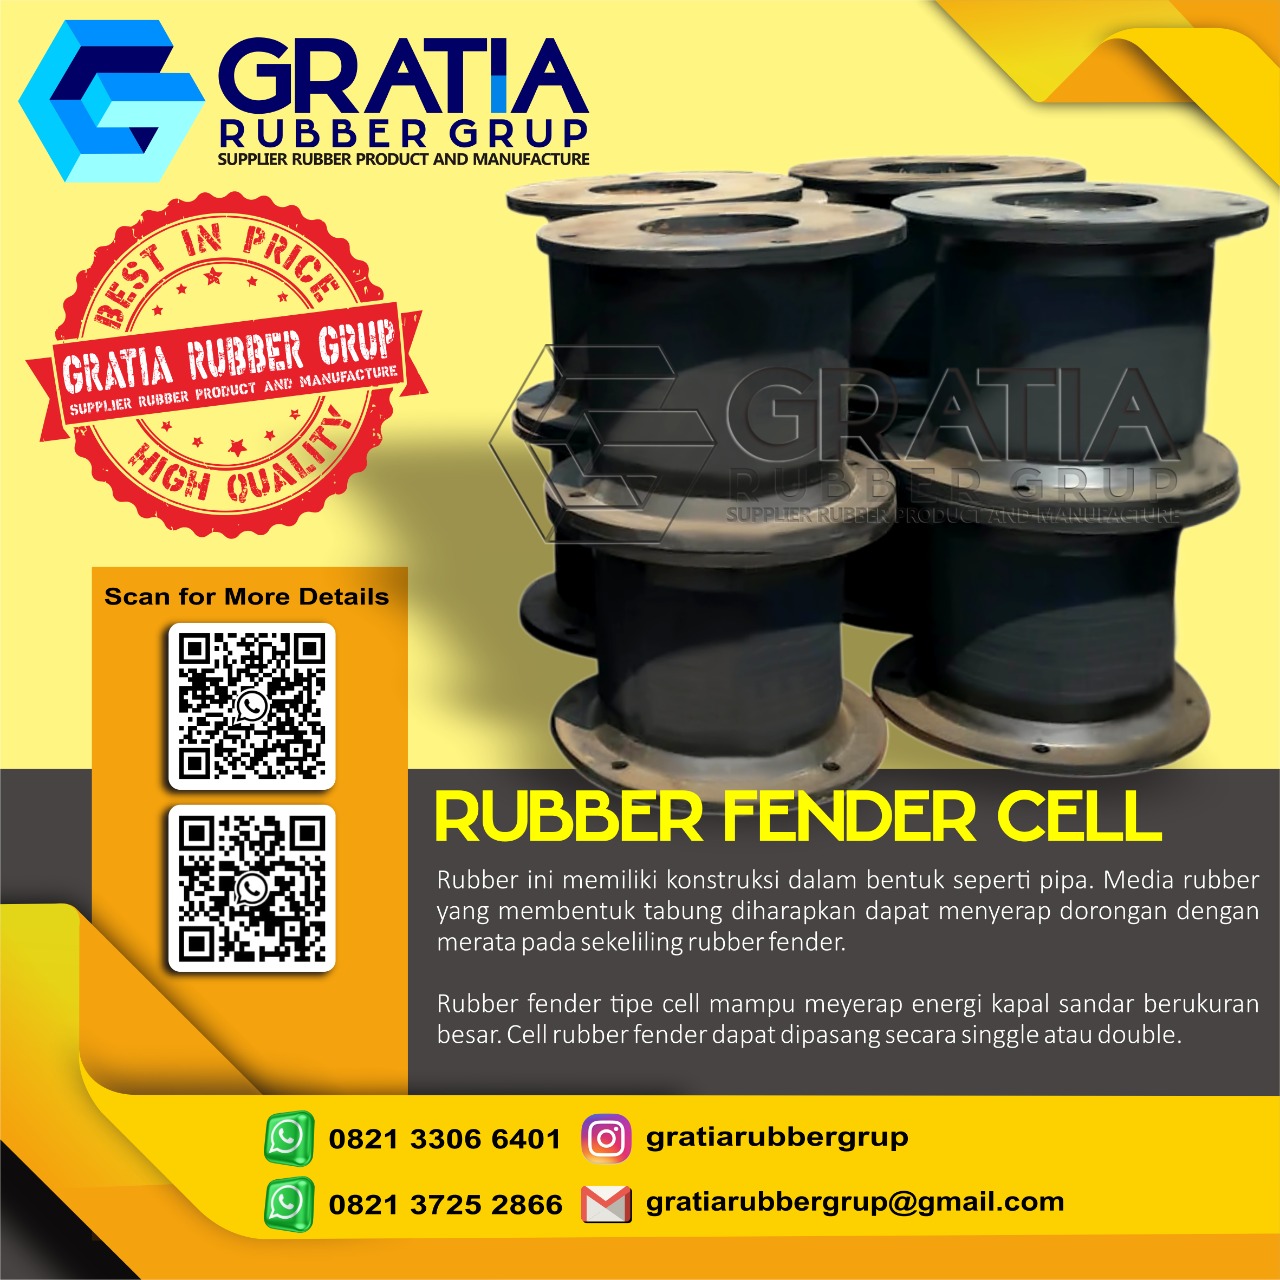 Distributor Rubber Fender Berkualitas  Melayani Pengiriman Ke Jakarta Selatan Hub 0821 3306 0461